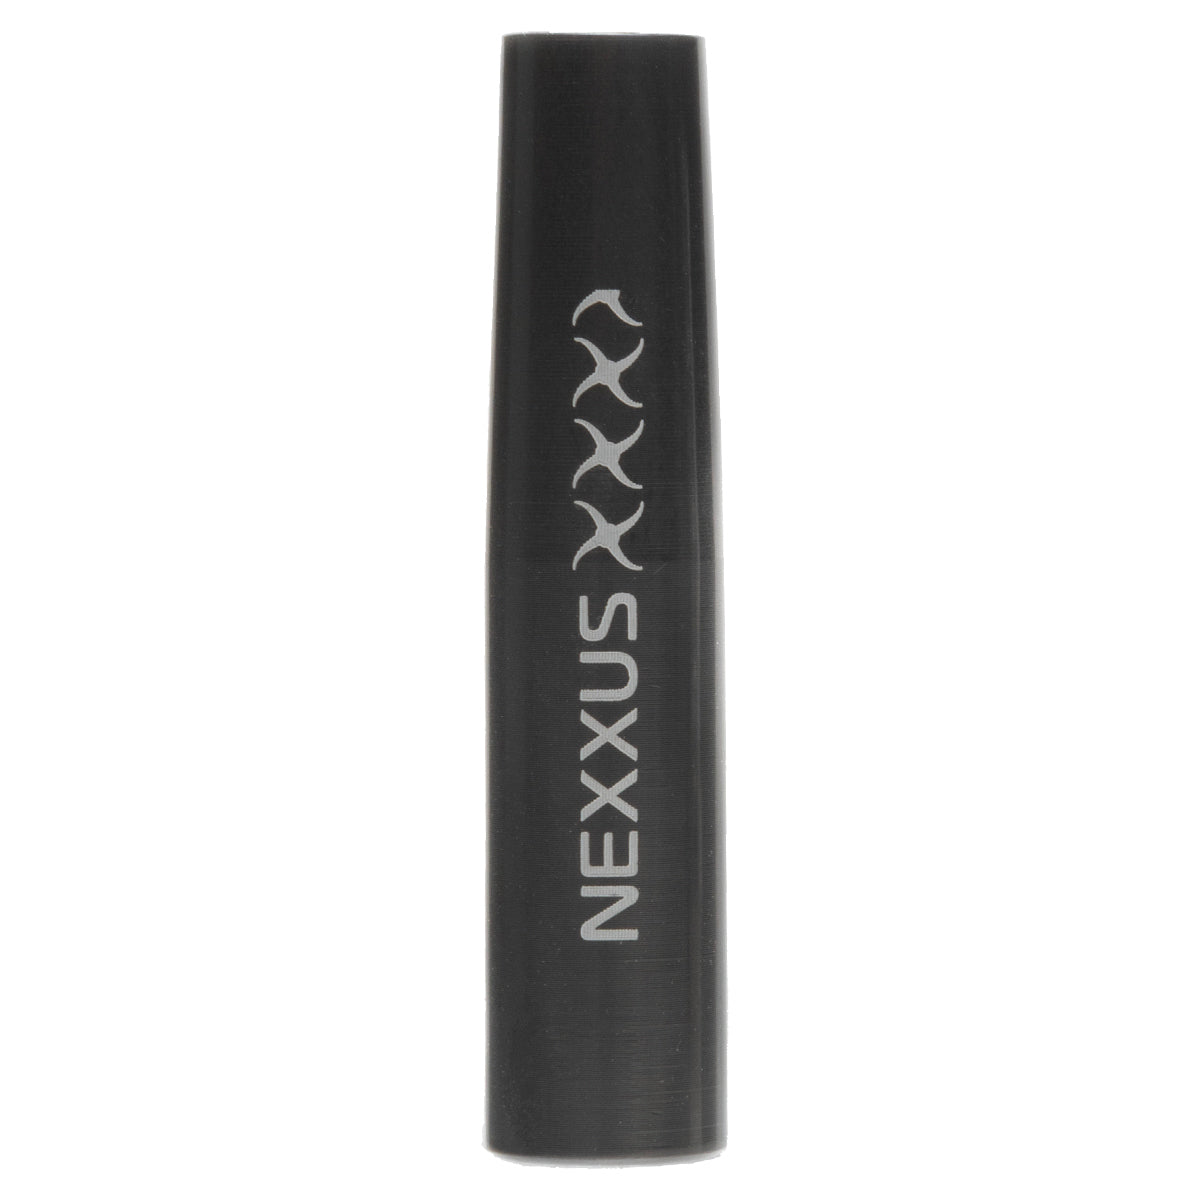 Nexxus Defender Outsert - 12 Count in  by GOHUNT | Nexxus - GOHUNT Shop